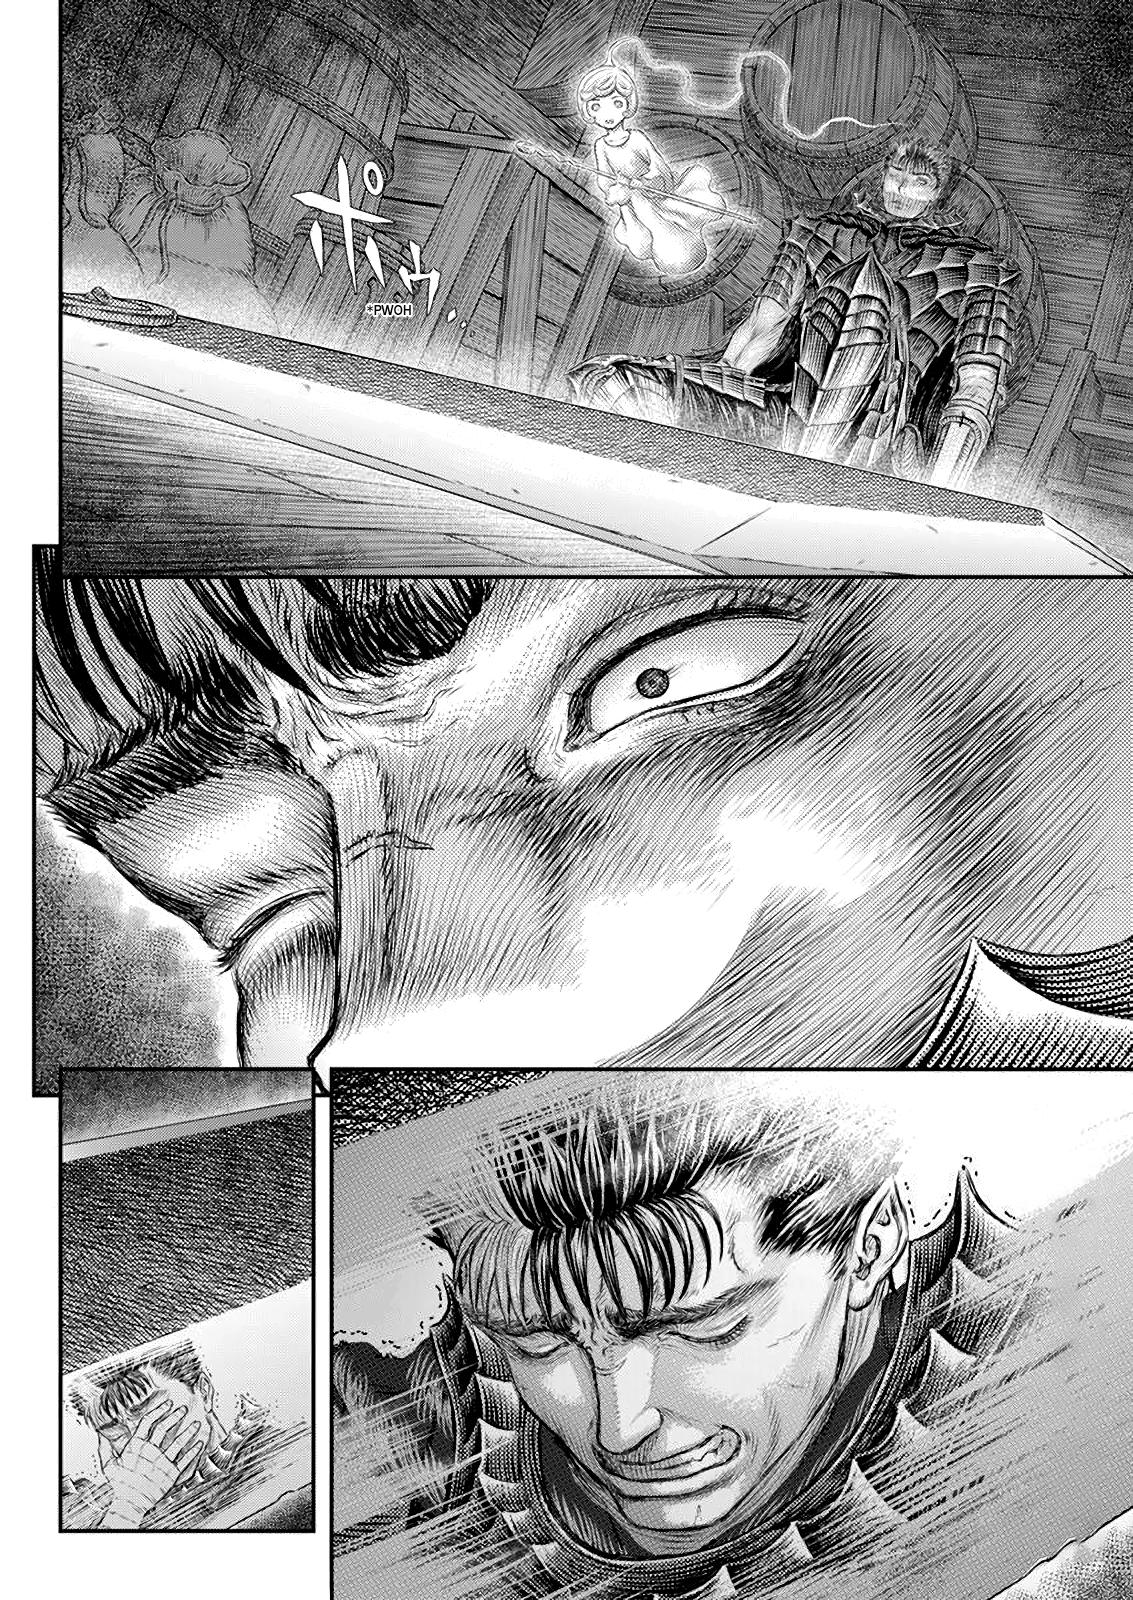 Berserk Manga Chapter 371 image 03